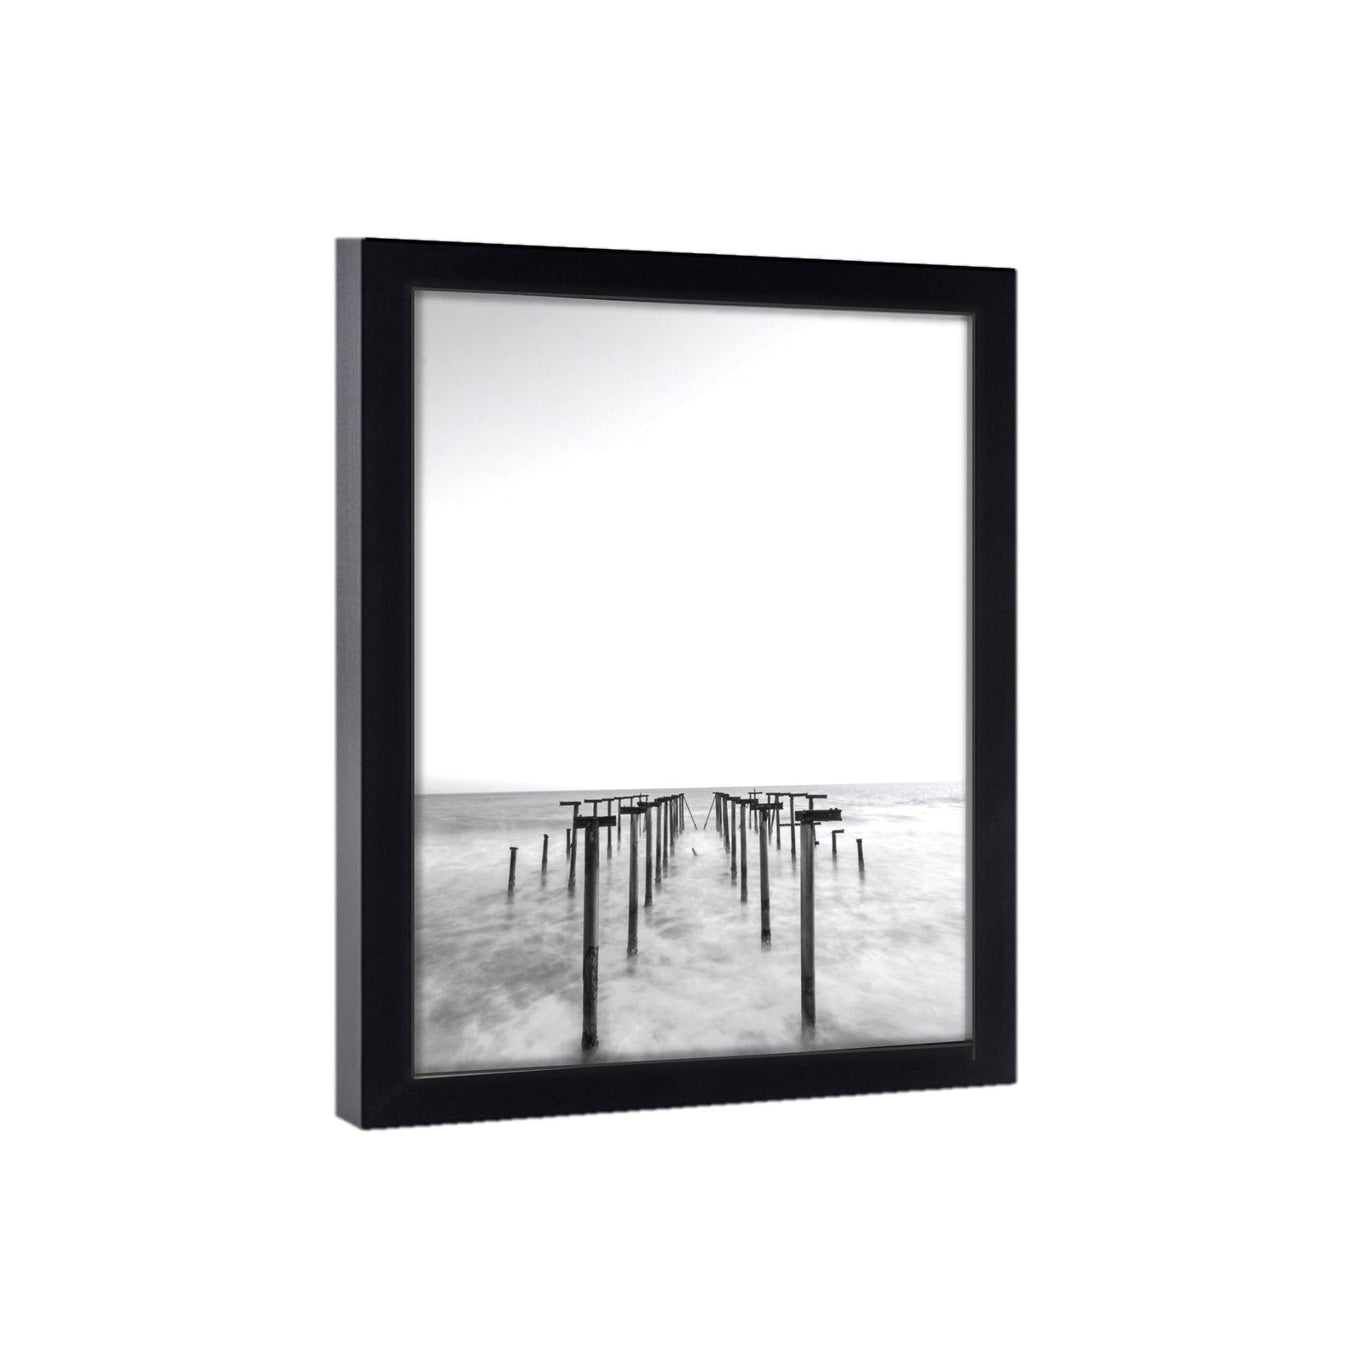 Black Picture Frames - Modern Memory Design Picture frames - New Jersey Frame Shop Custom Framing